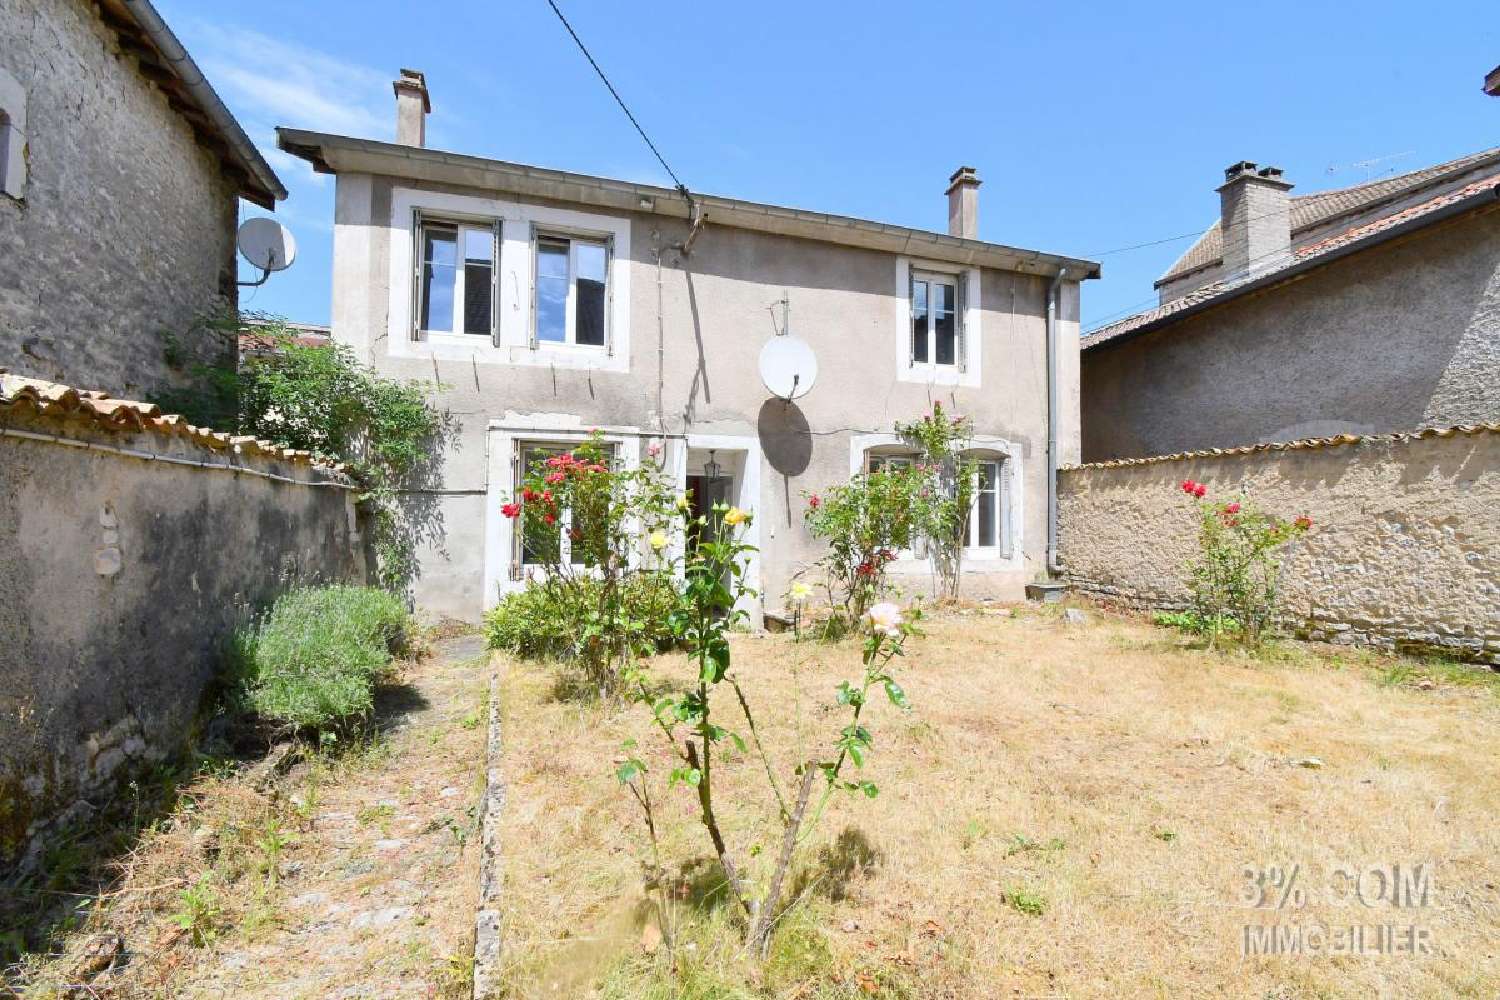  for sale village house Maxey-sur-Vaise Meuse 2